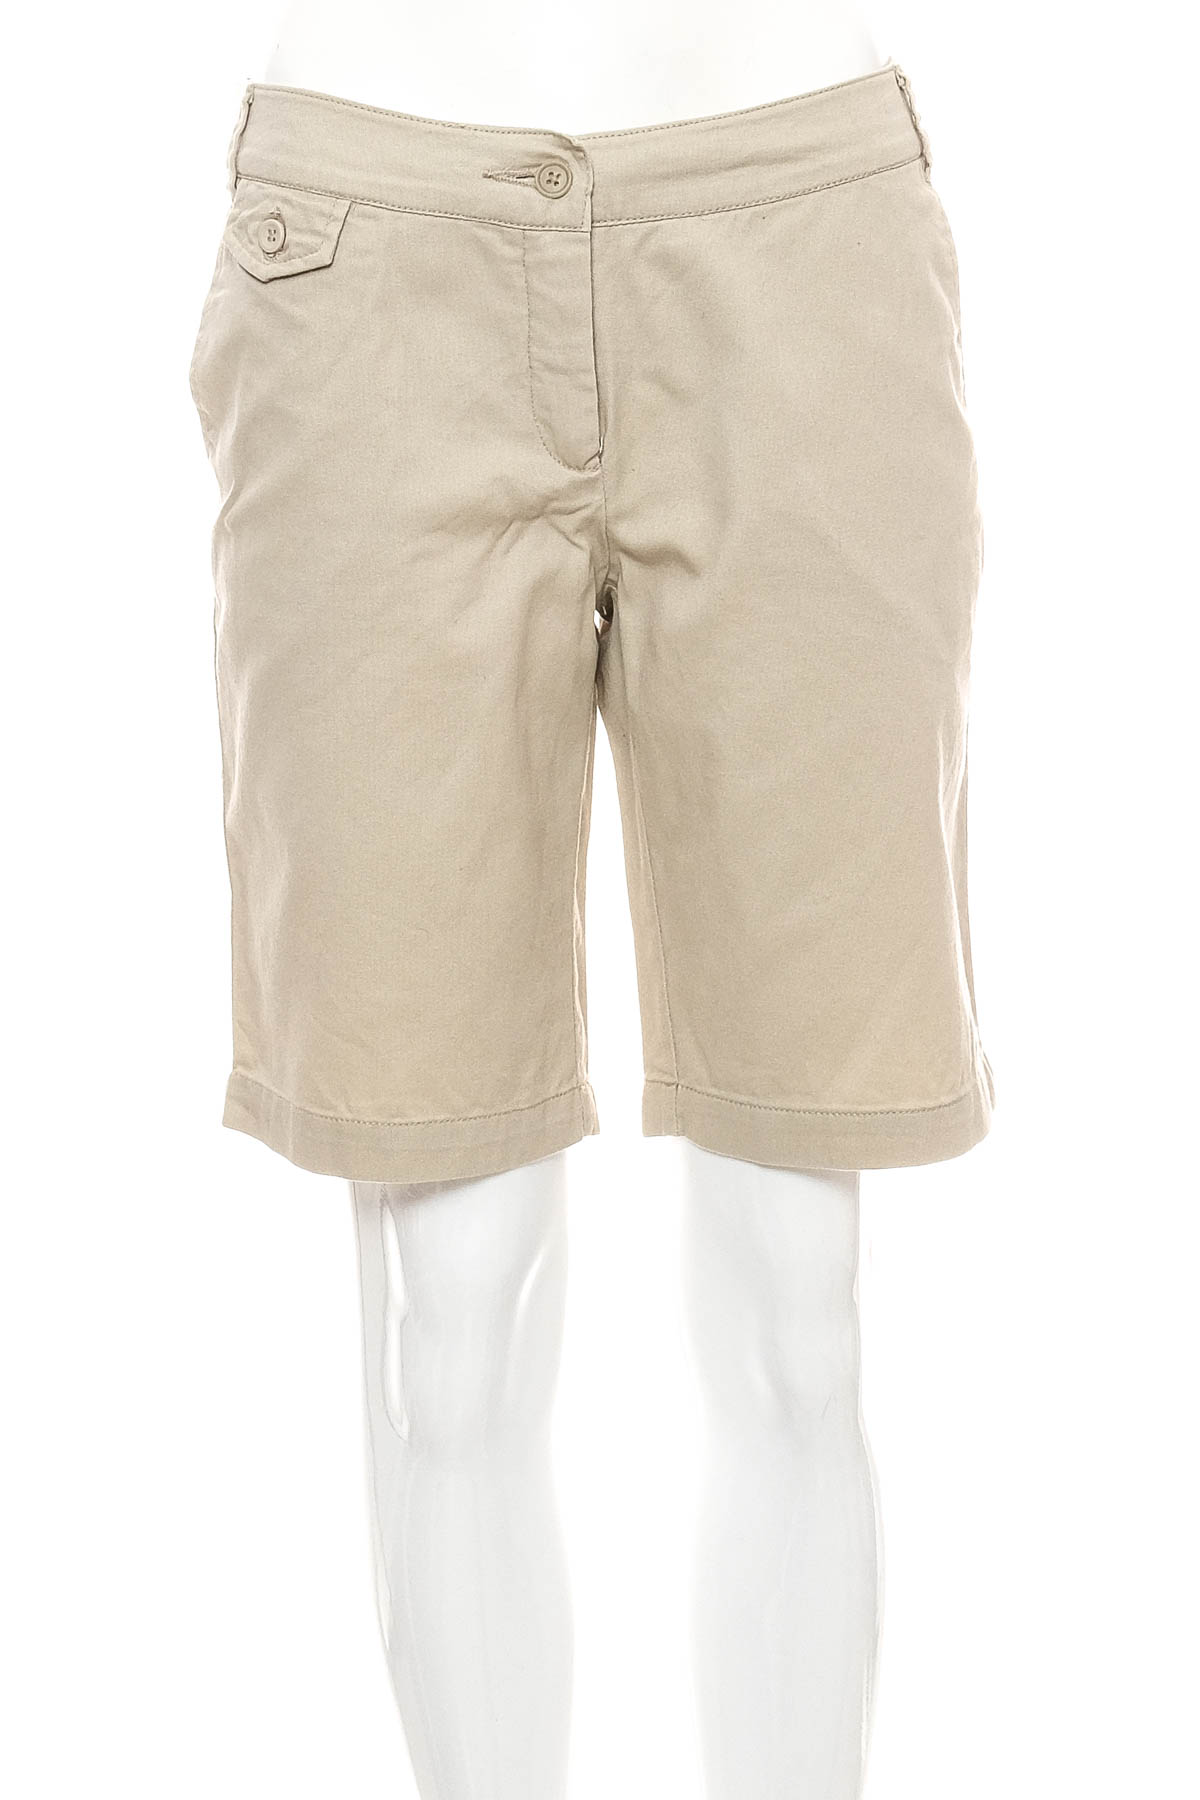 Krótkie spodnie damskie - Colin's - 0